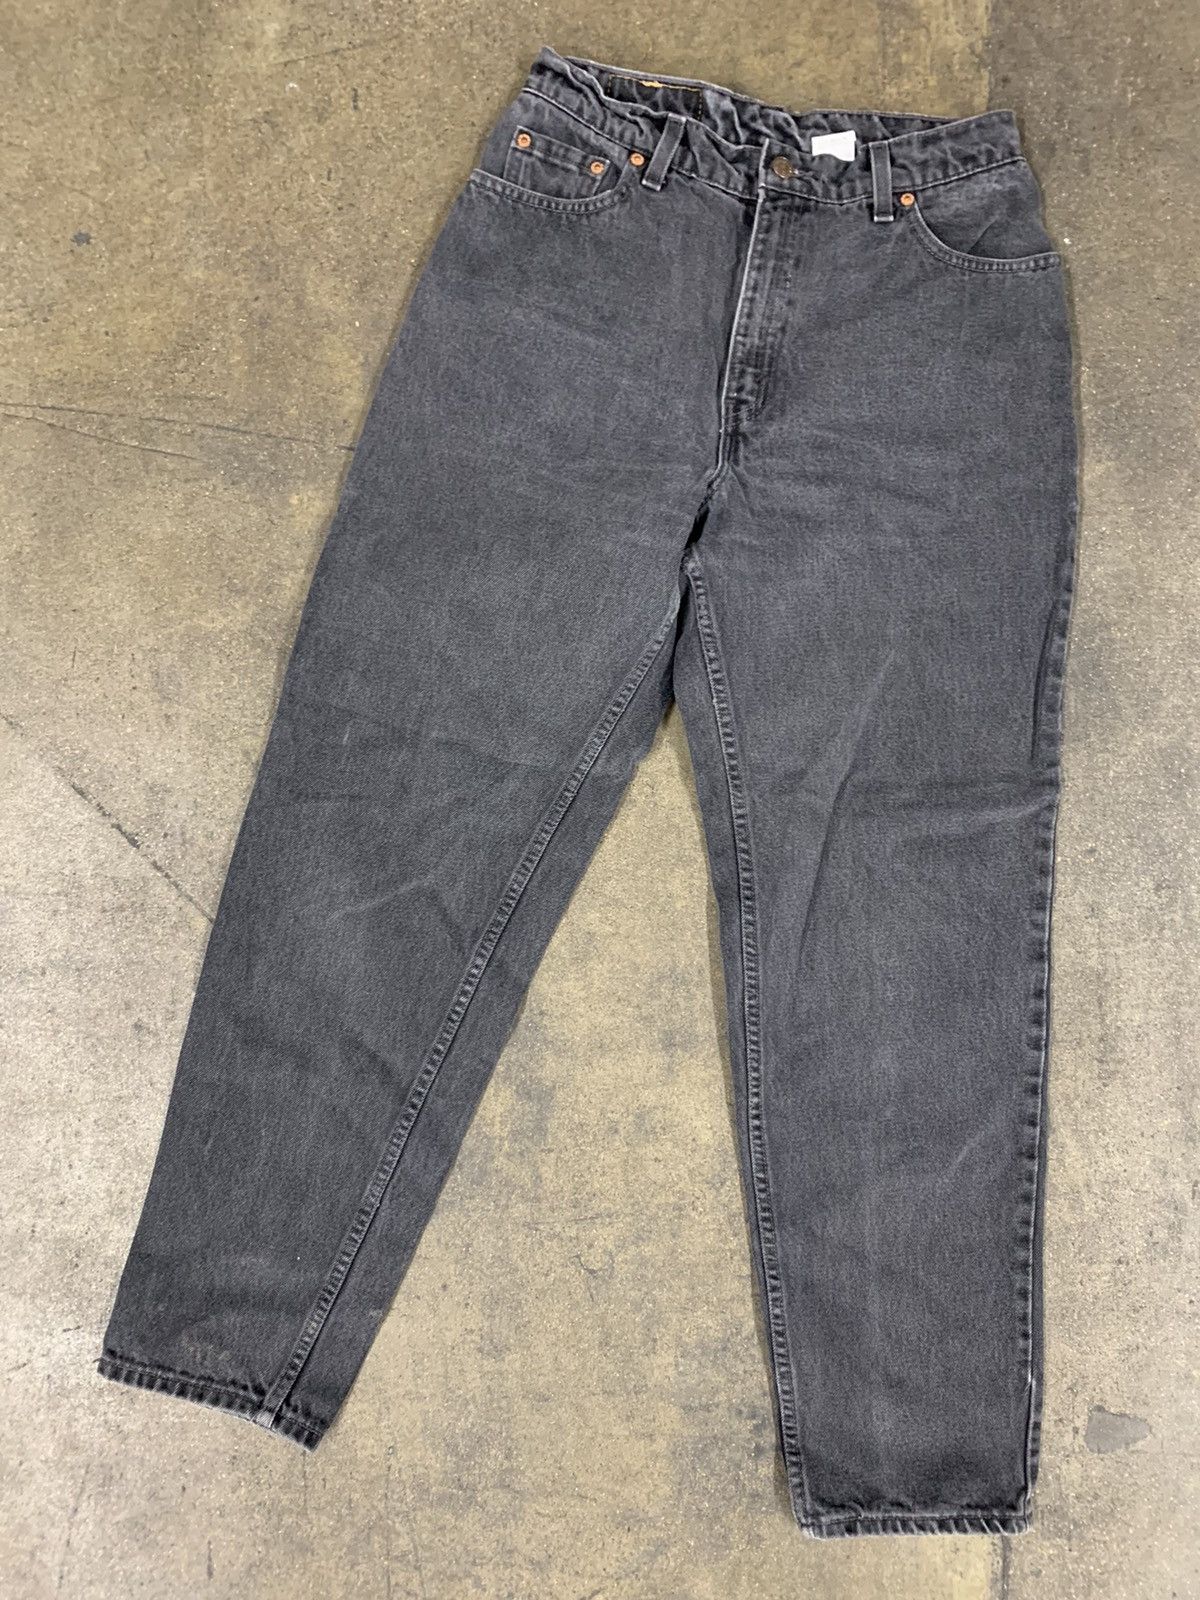 Vintage Vintage 1990s Levi’s 550 Black Jeans Size US 28 / EU 44 - 1 Preview